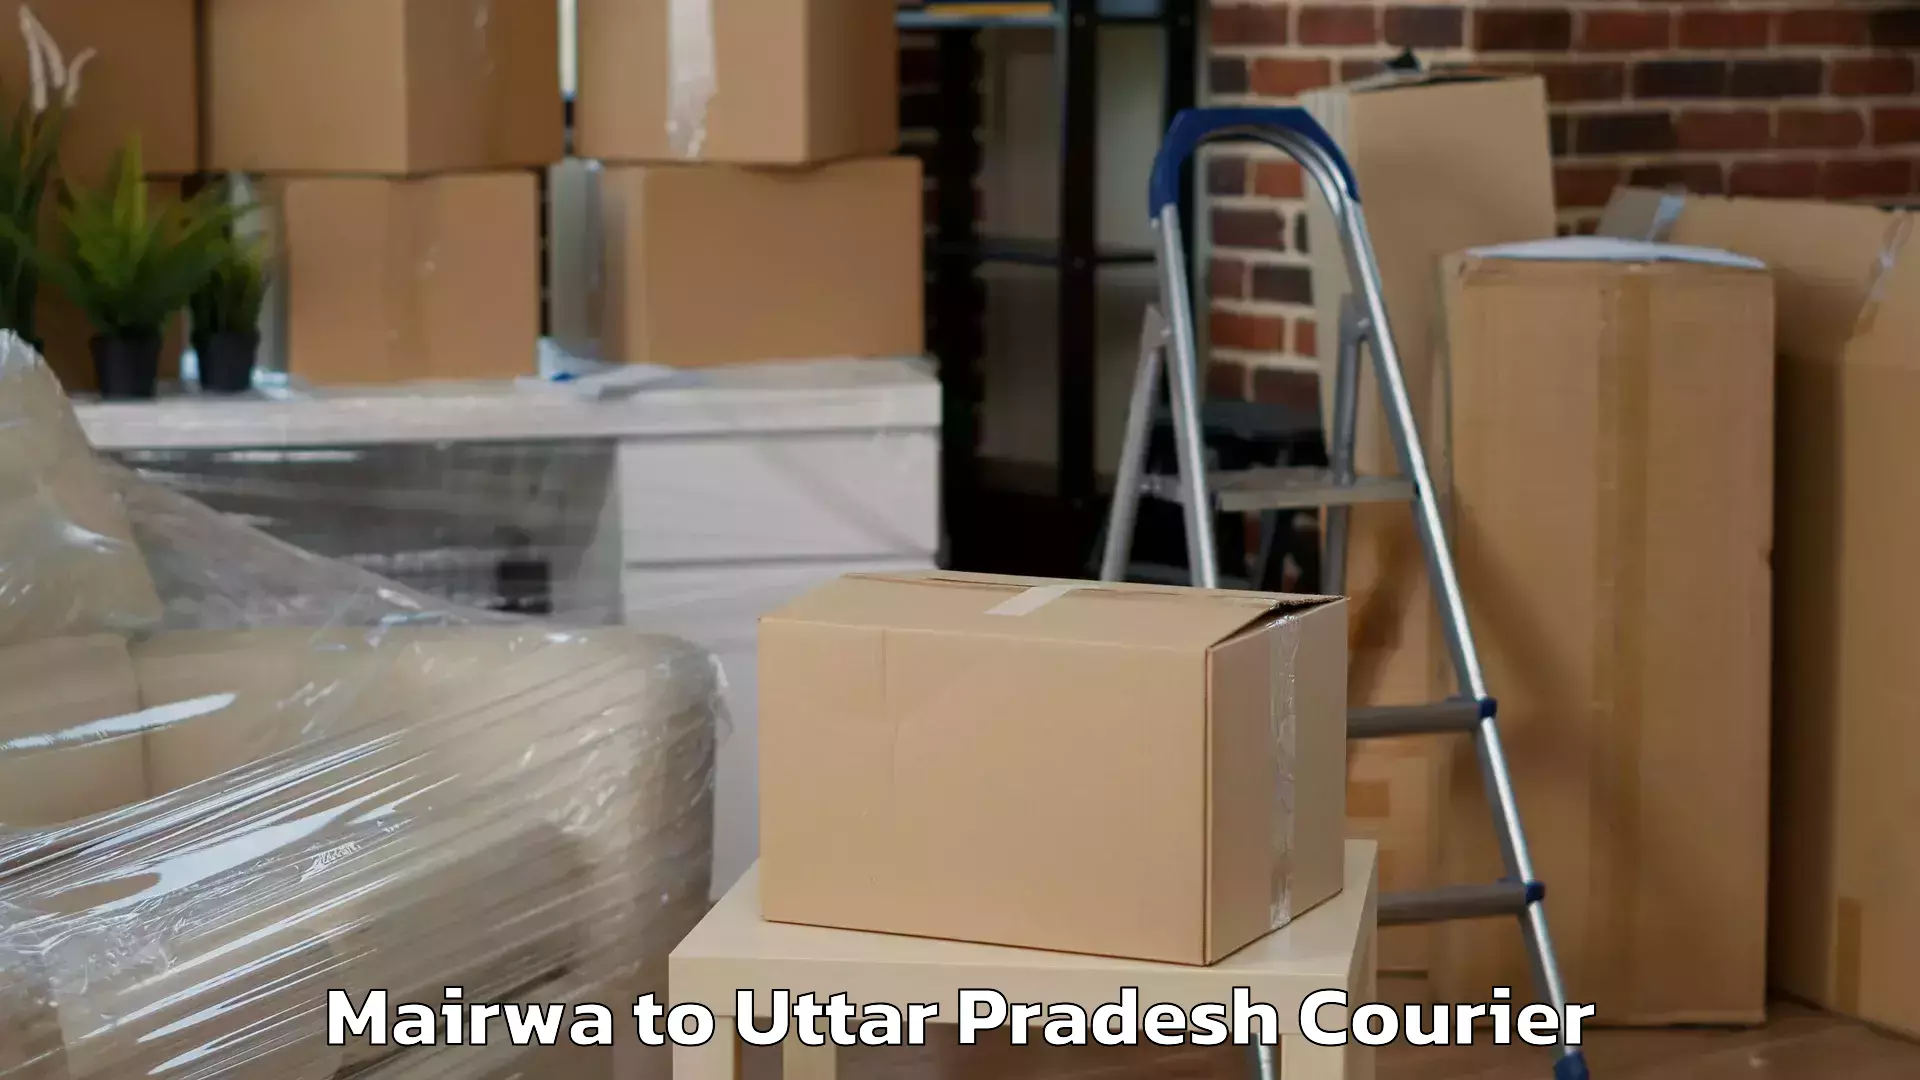 Rapid freight solutions Mairwa to Uttar Pradesh